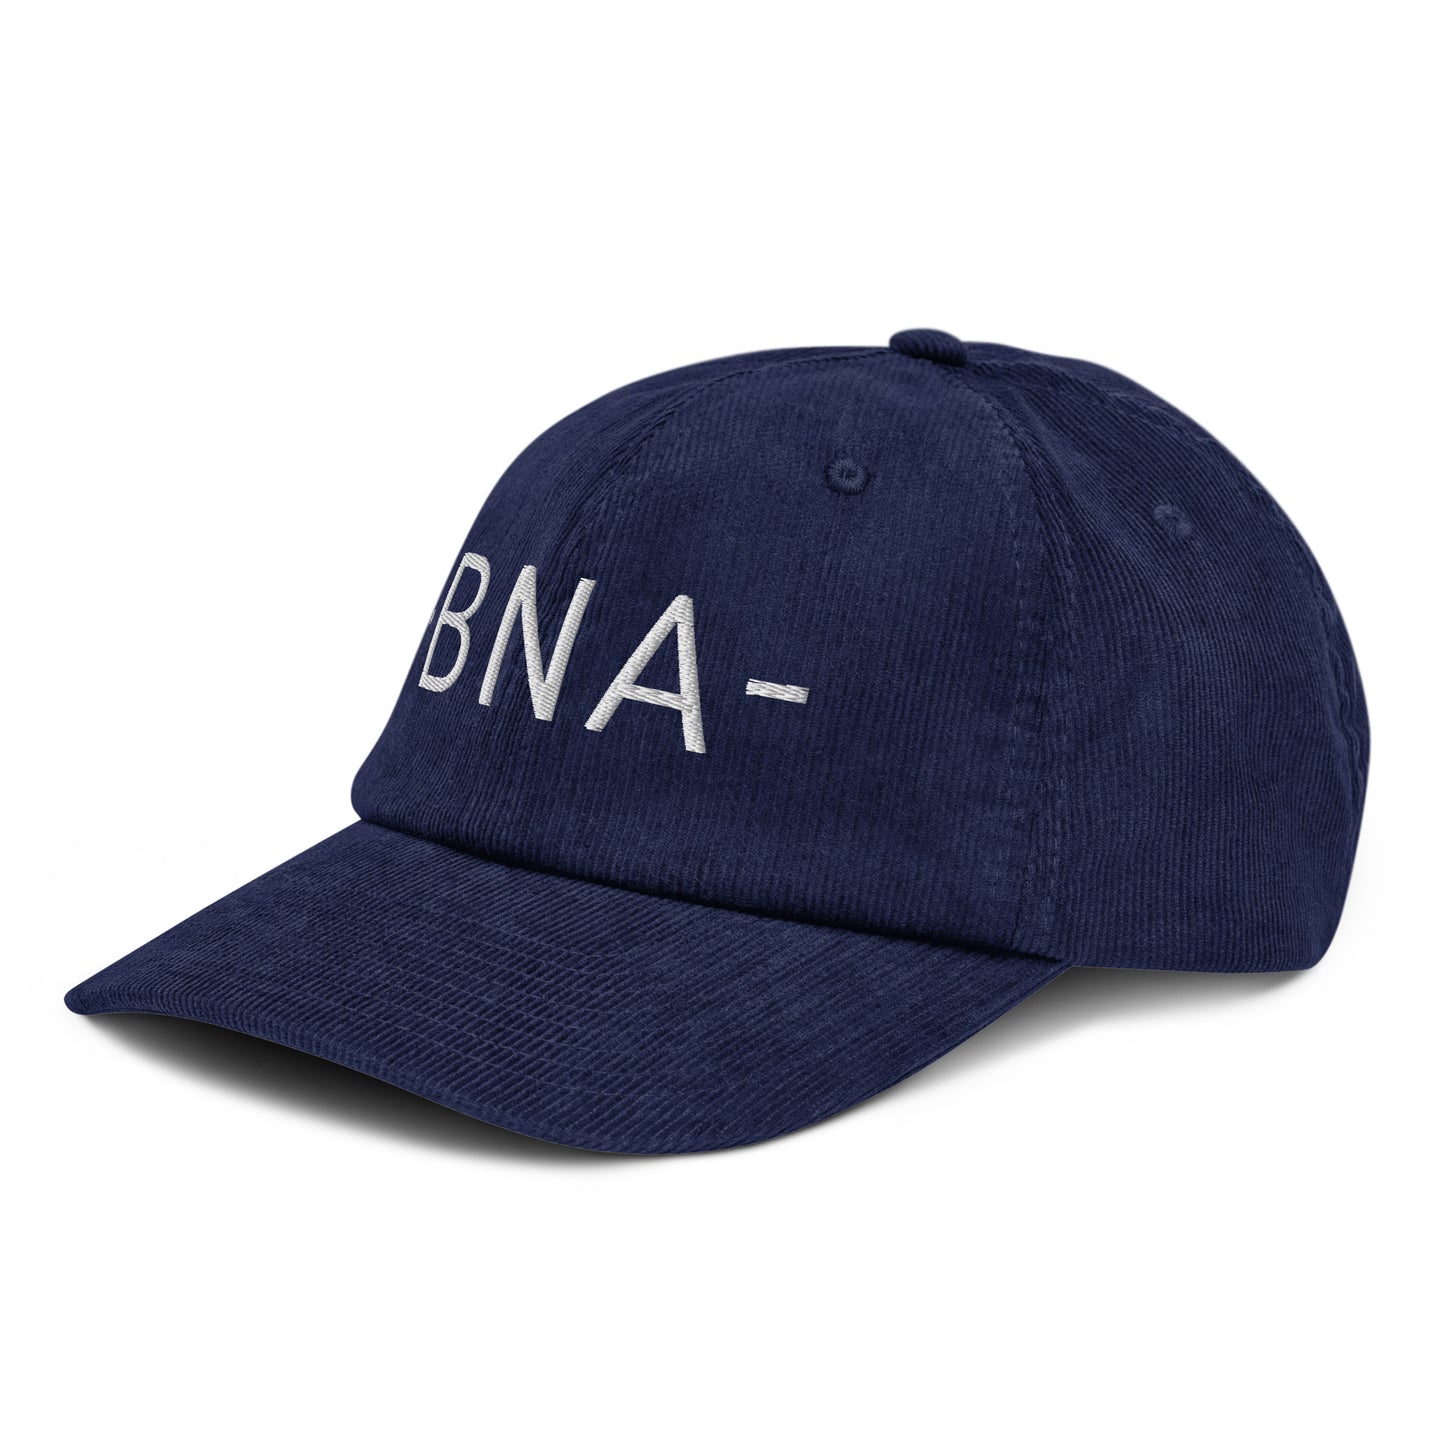 Souvenir Corduroy Hat - White • BNA Nashville • YHM Designs - Image 01